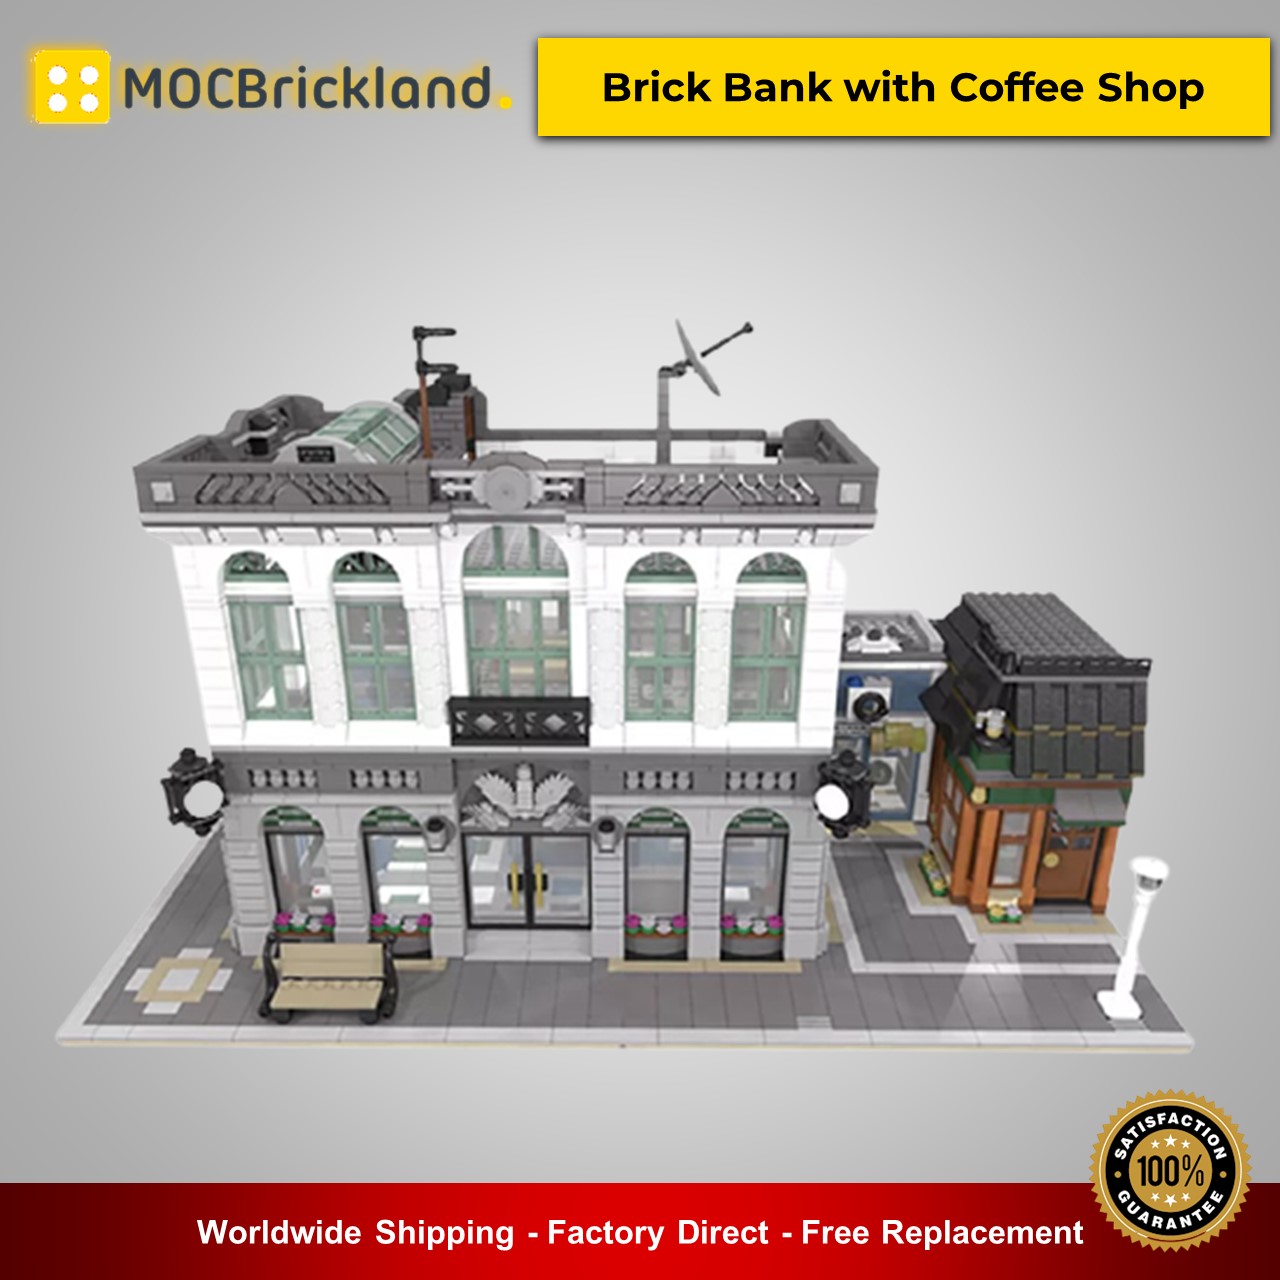 Brick Bank mit Café Bausteine Spielzeug MOC-10811 für Erwachsene 3963 teile 